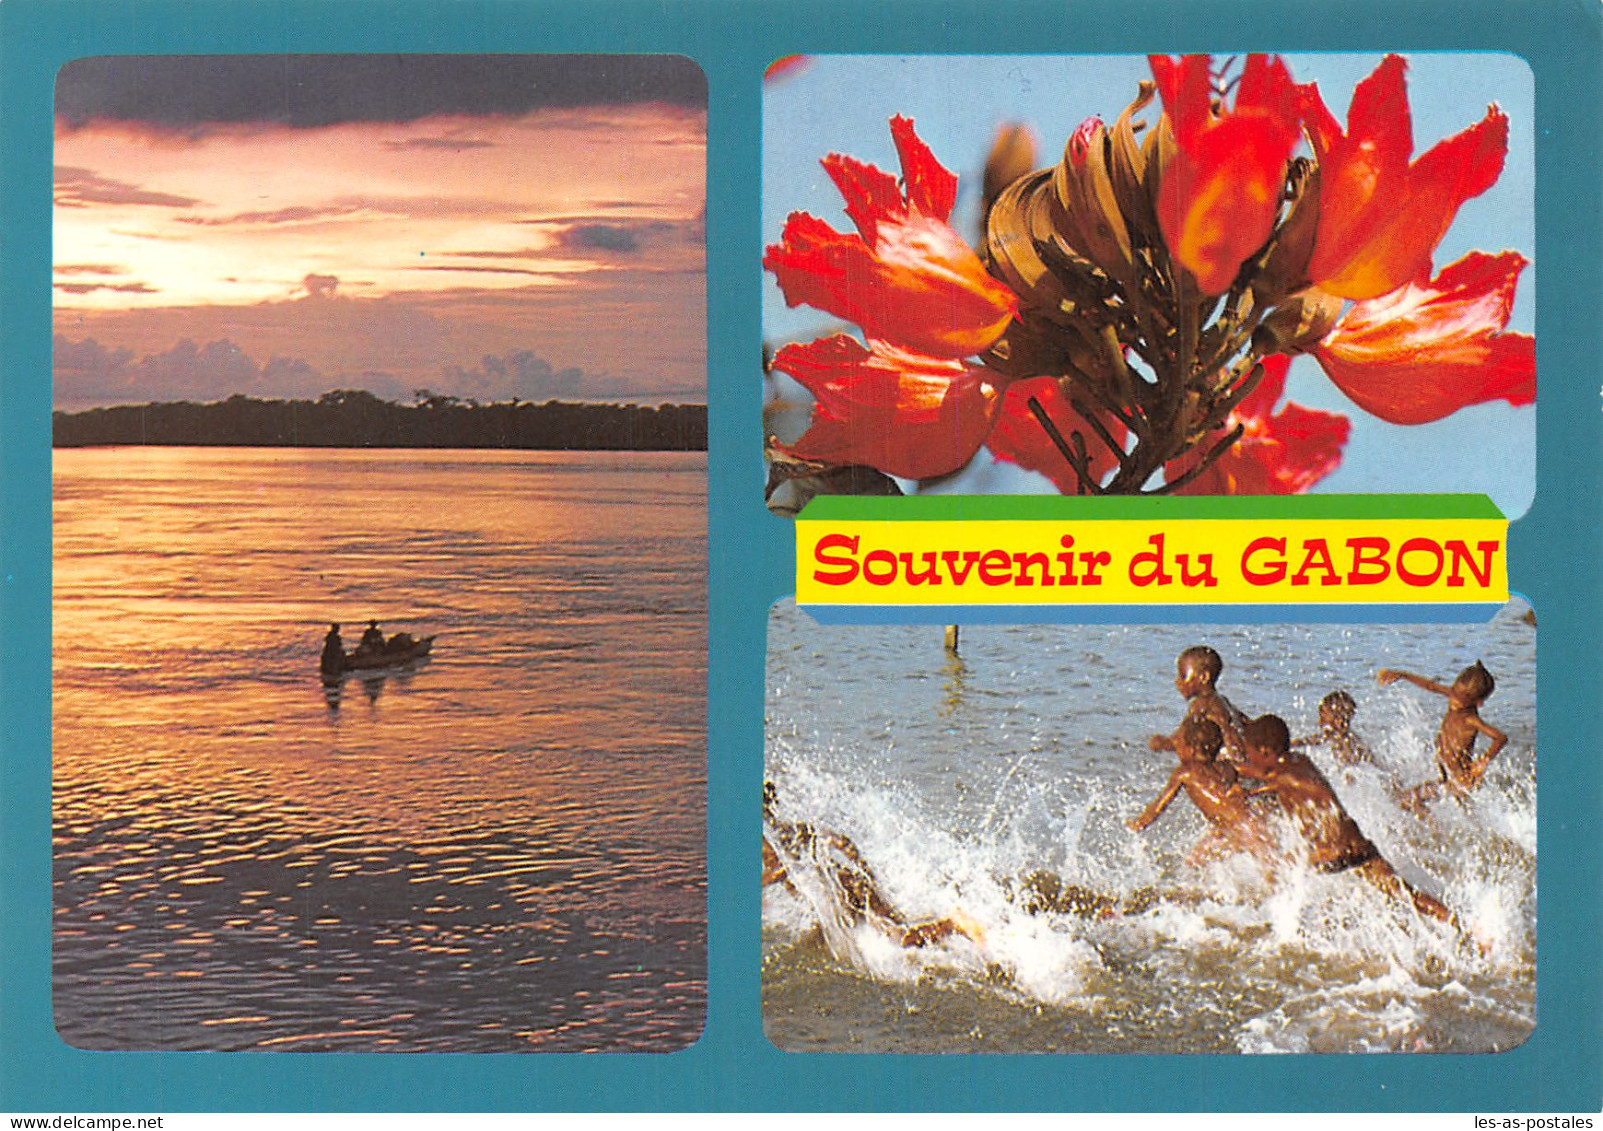 GABON L OGOOUE - Gabon